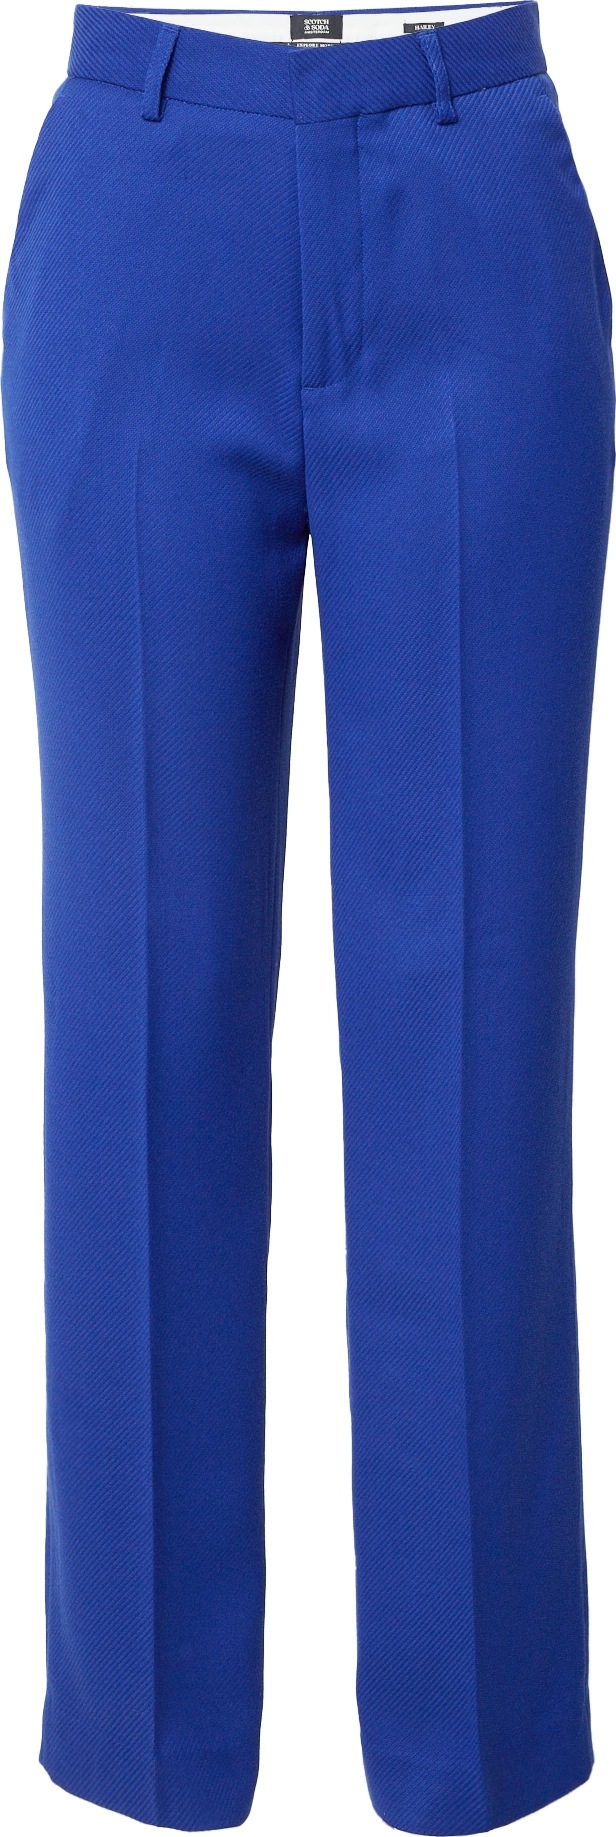 SCOTCH & SODA Kalhoty s puky 'Hailey' kobaltová modř